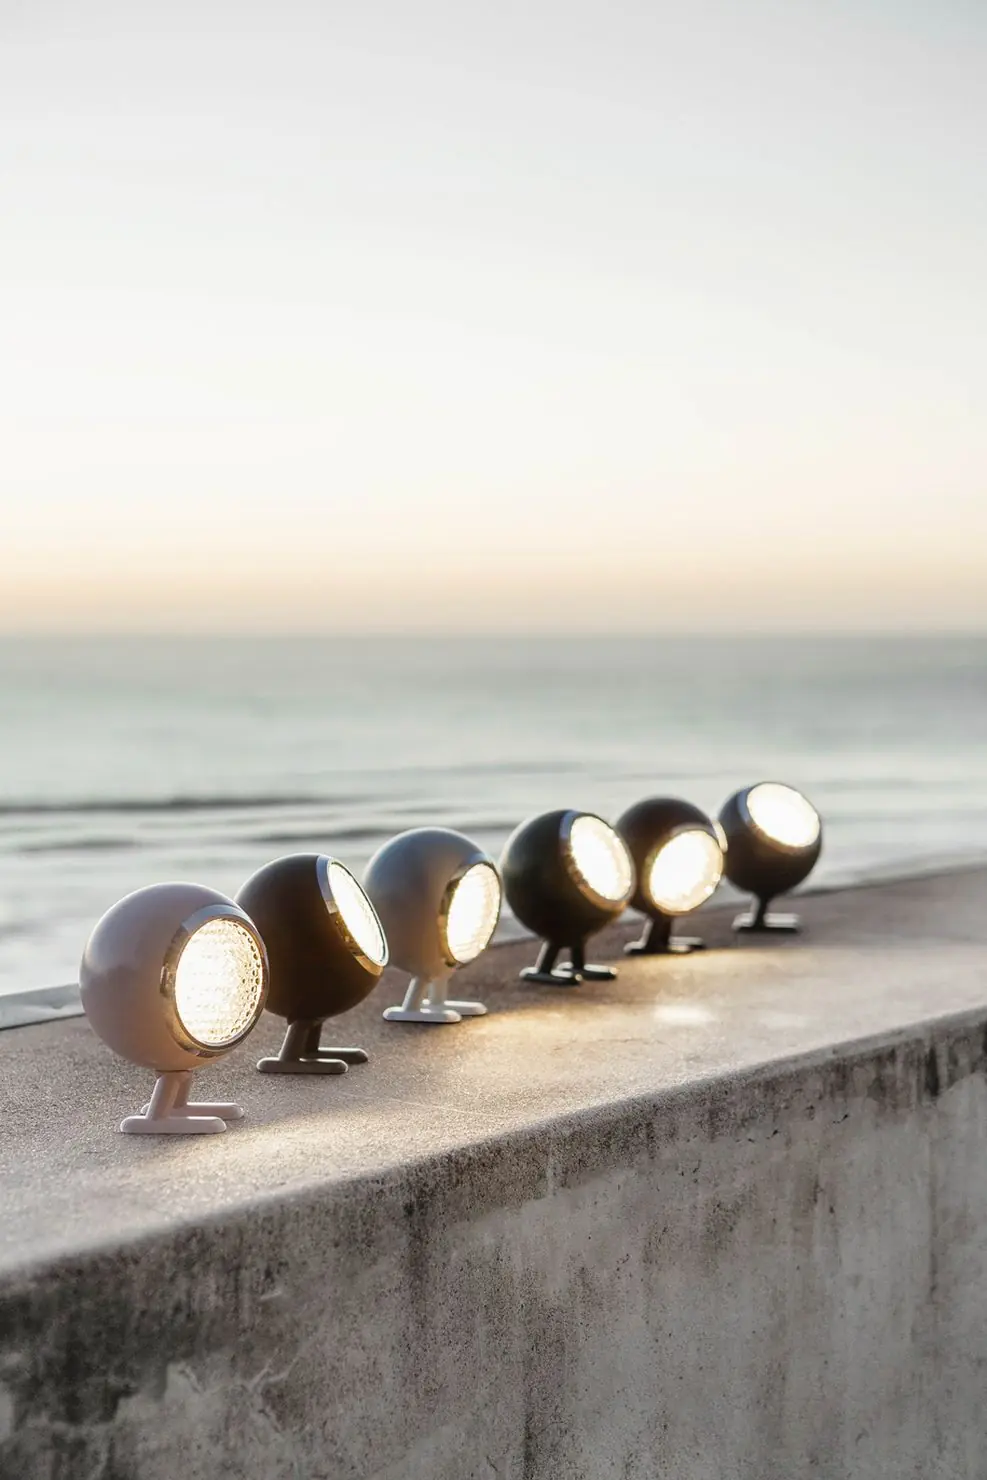  Norbitt Mr. Wattson LED Lampe Übersicht am Strand